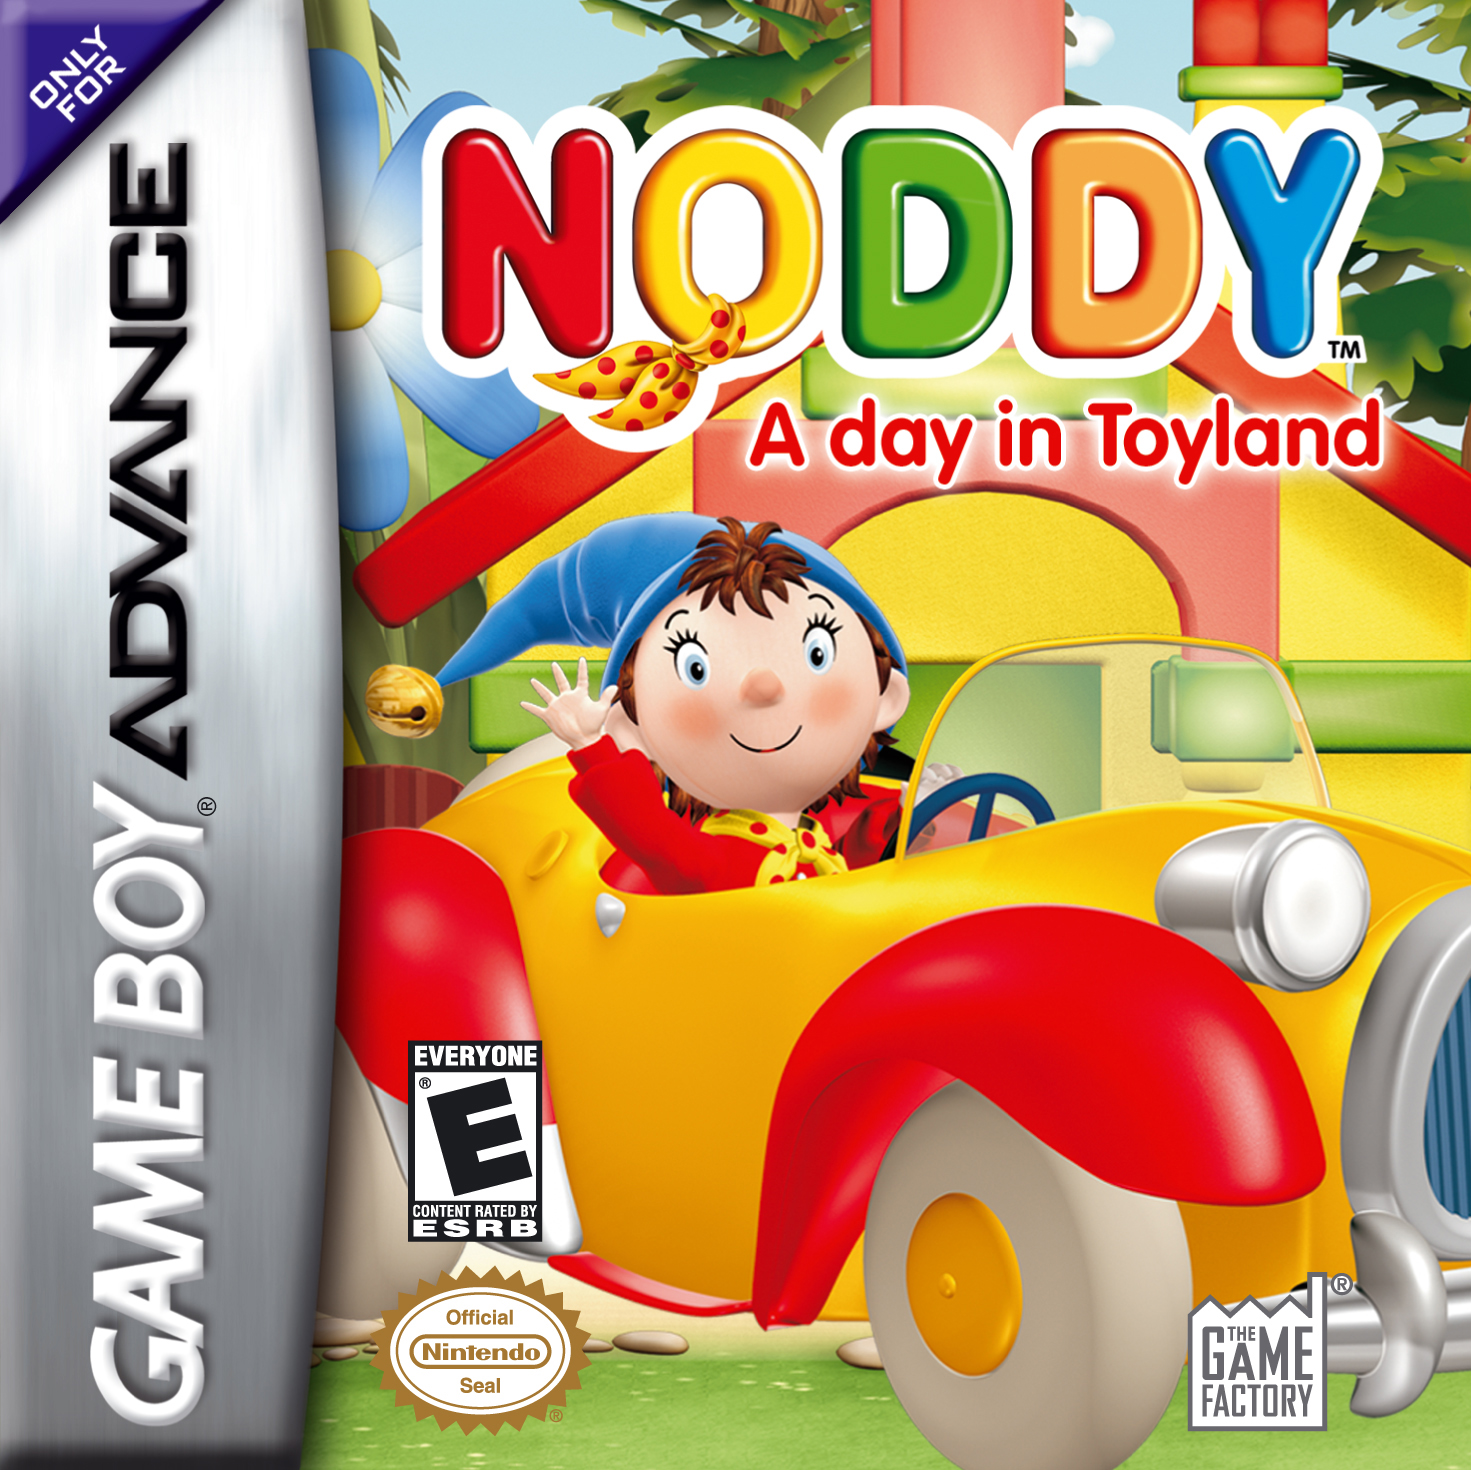 Noddy A Day in Toyland